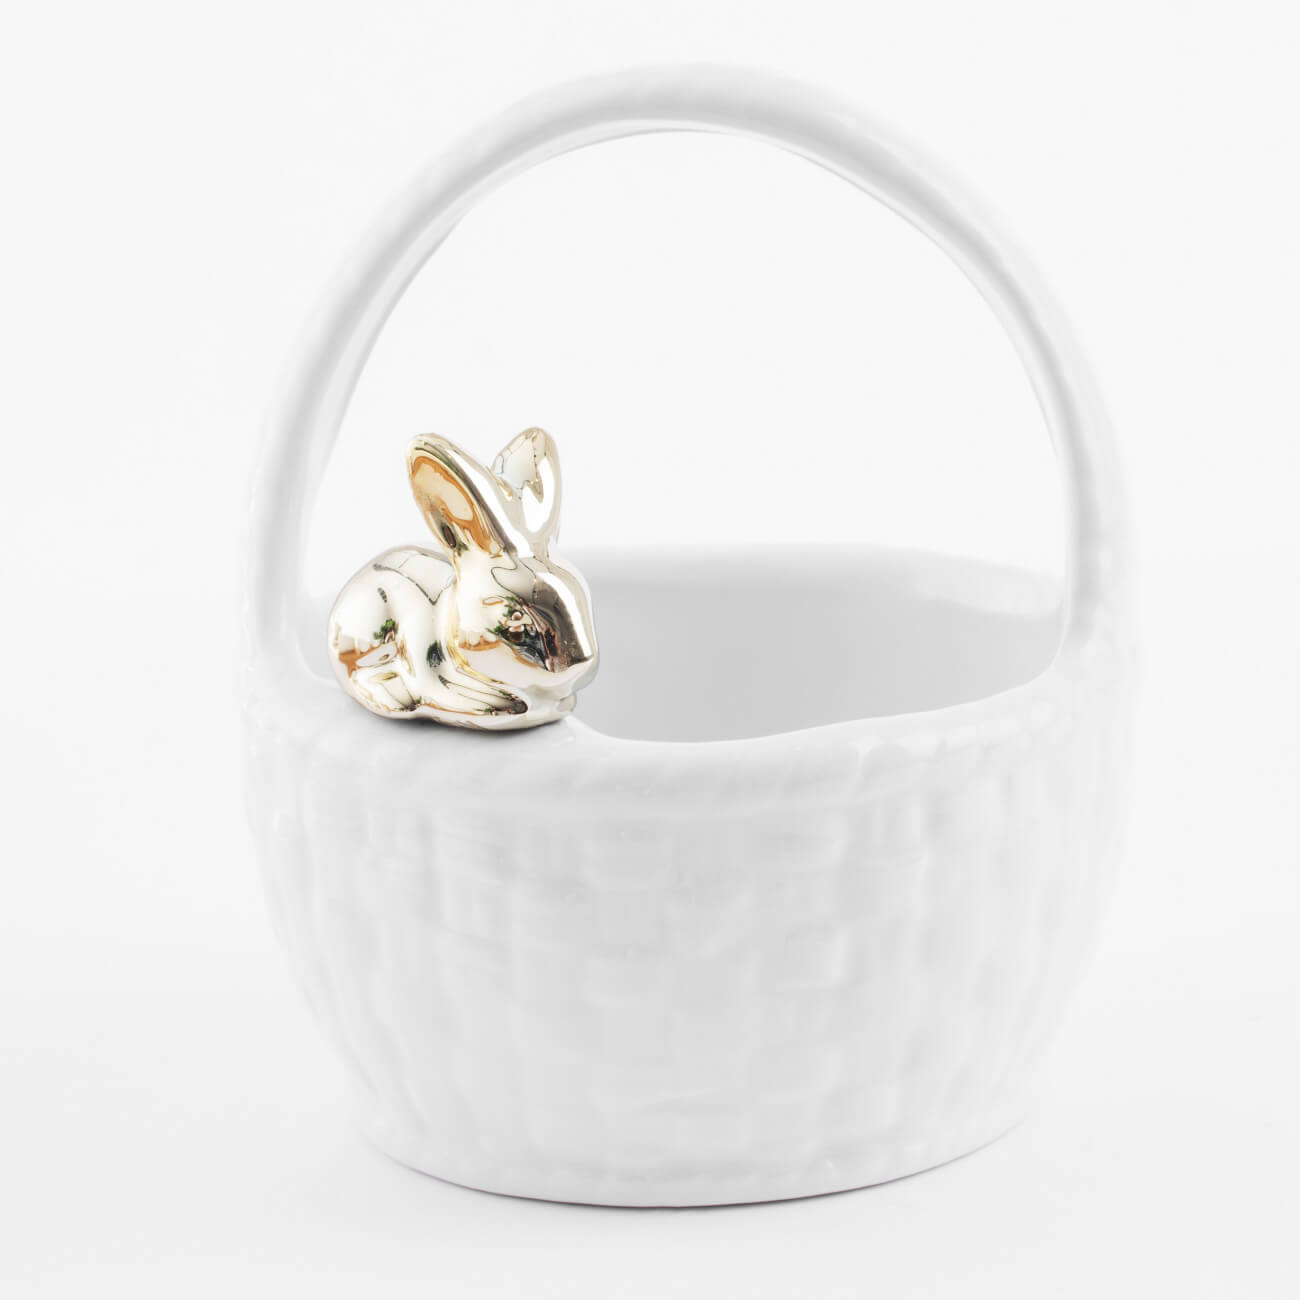 Конфетница, 12х14 см, с ручкой, керамика, белая, Кролик на корзине, Easter gold подставка для яйца 6 см керамика белая кролик в ах easter